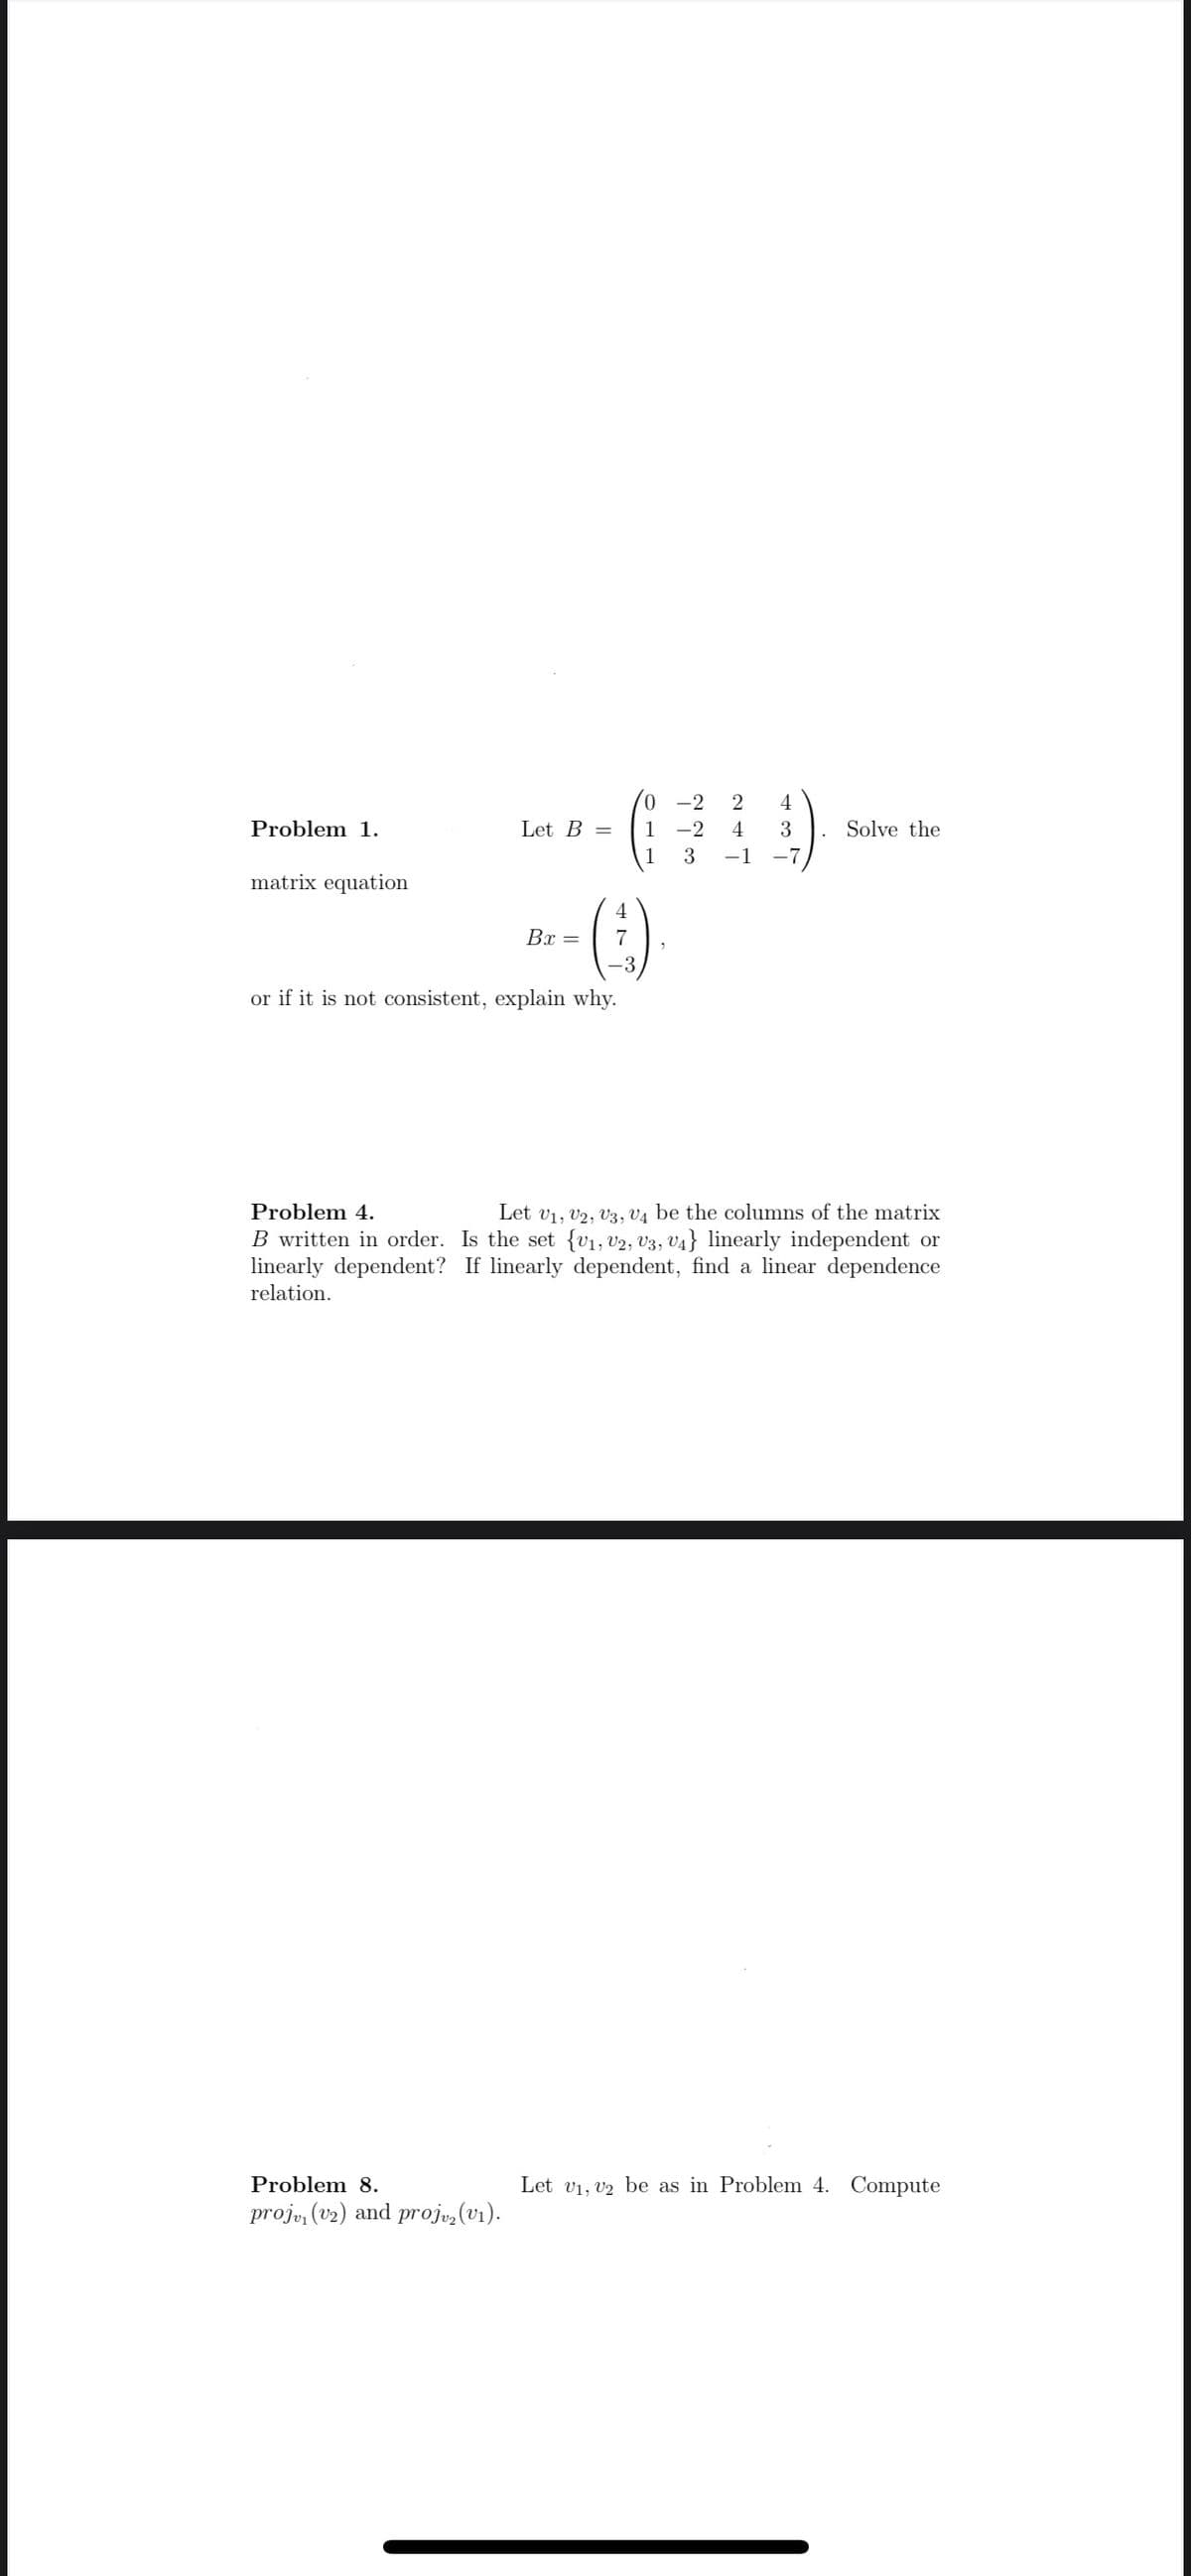 Problem 1.
matrix equation
Let B =
0
1
B-- (-:-)
Bx = 7
or if it is not consistent, explain why.
Problem 8.
proj, (v2) and projv₂ (v₁).
-2
2
-2 4
3 -1
4
3
-7
Solve the
Problem 4.
Let V₁, V2, V3, V4 be the columns of the matrix
B written in order. Is the set {V₁, V2, V3, V4} linearly independent or
linearly dependent? If linearly dependent, find a linear dependence
relation.
Let V₁, V2 be as in Problem 4. Compute